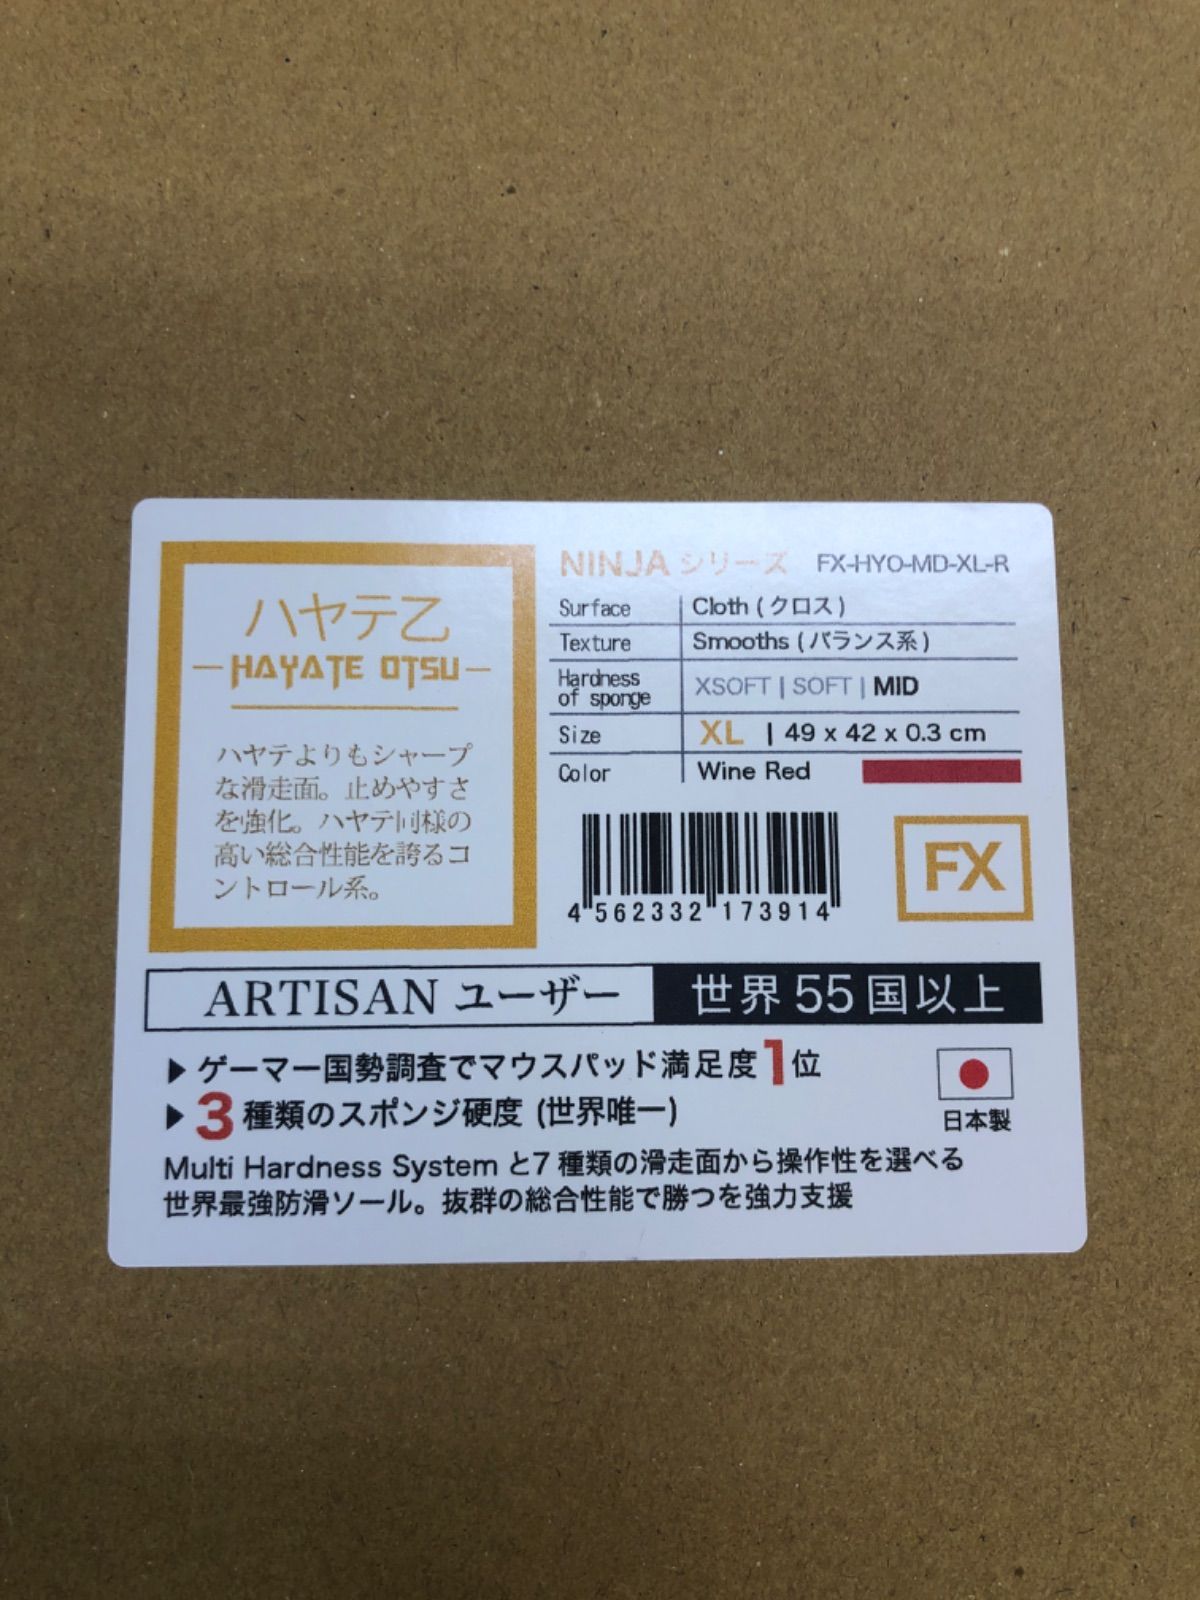 artisan ハヤテ乙　mid xl